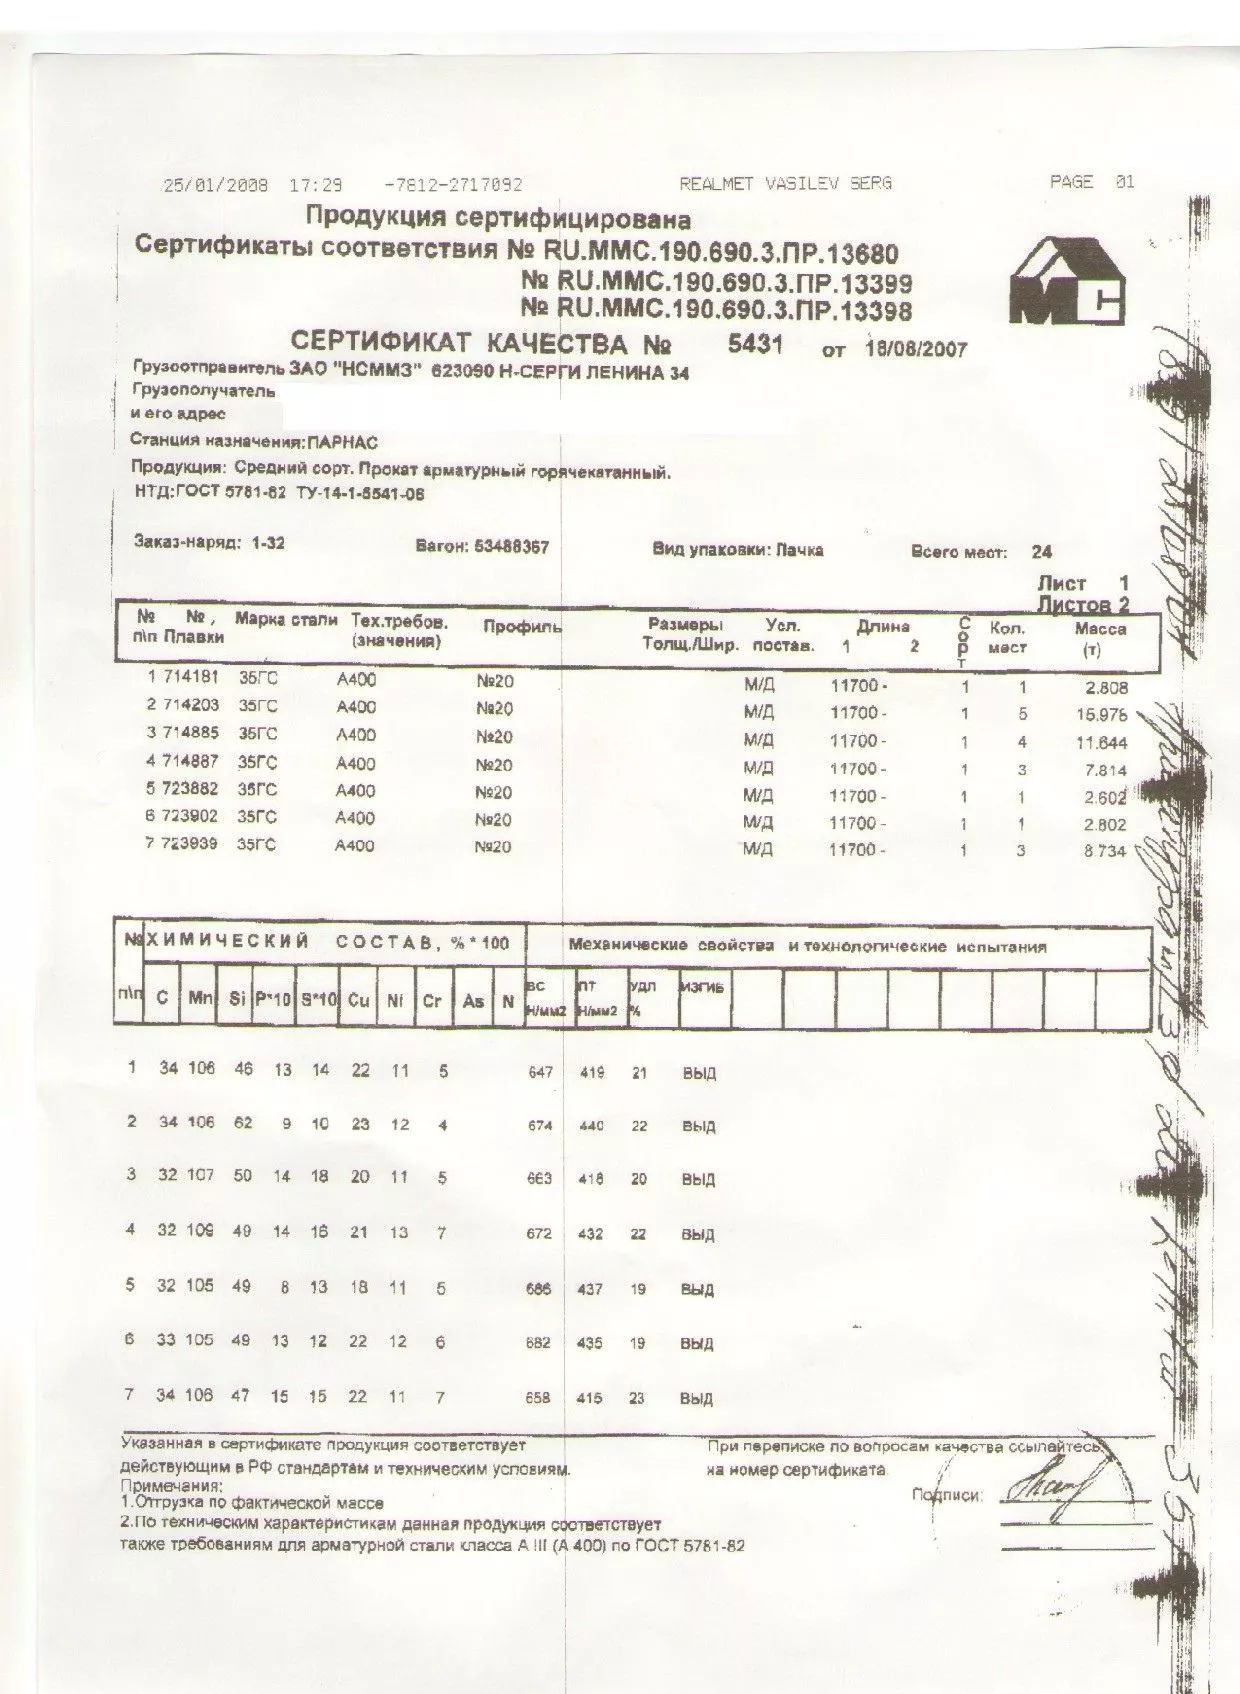 Сертификат на арматуру 20 марки 35ГС от 2007-08 (1.1)